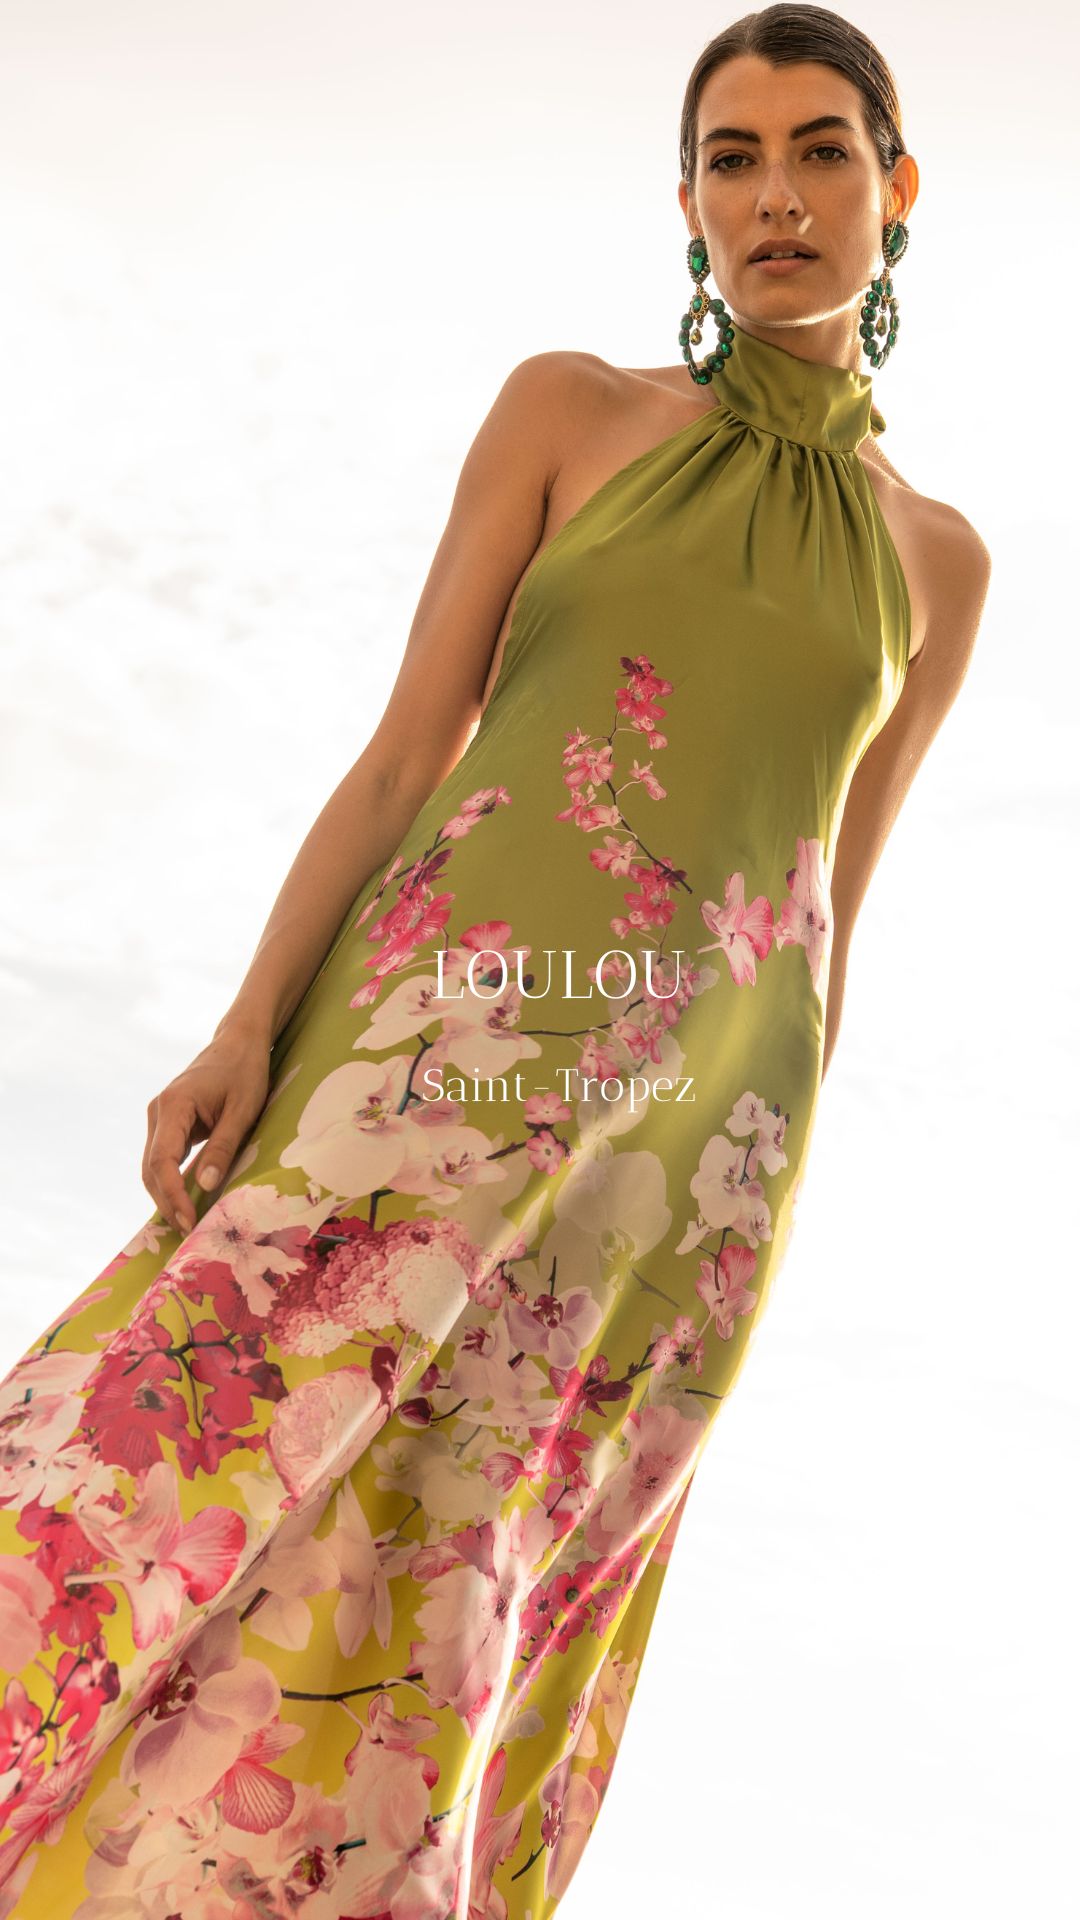 Luxury silk dress with flowers